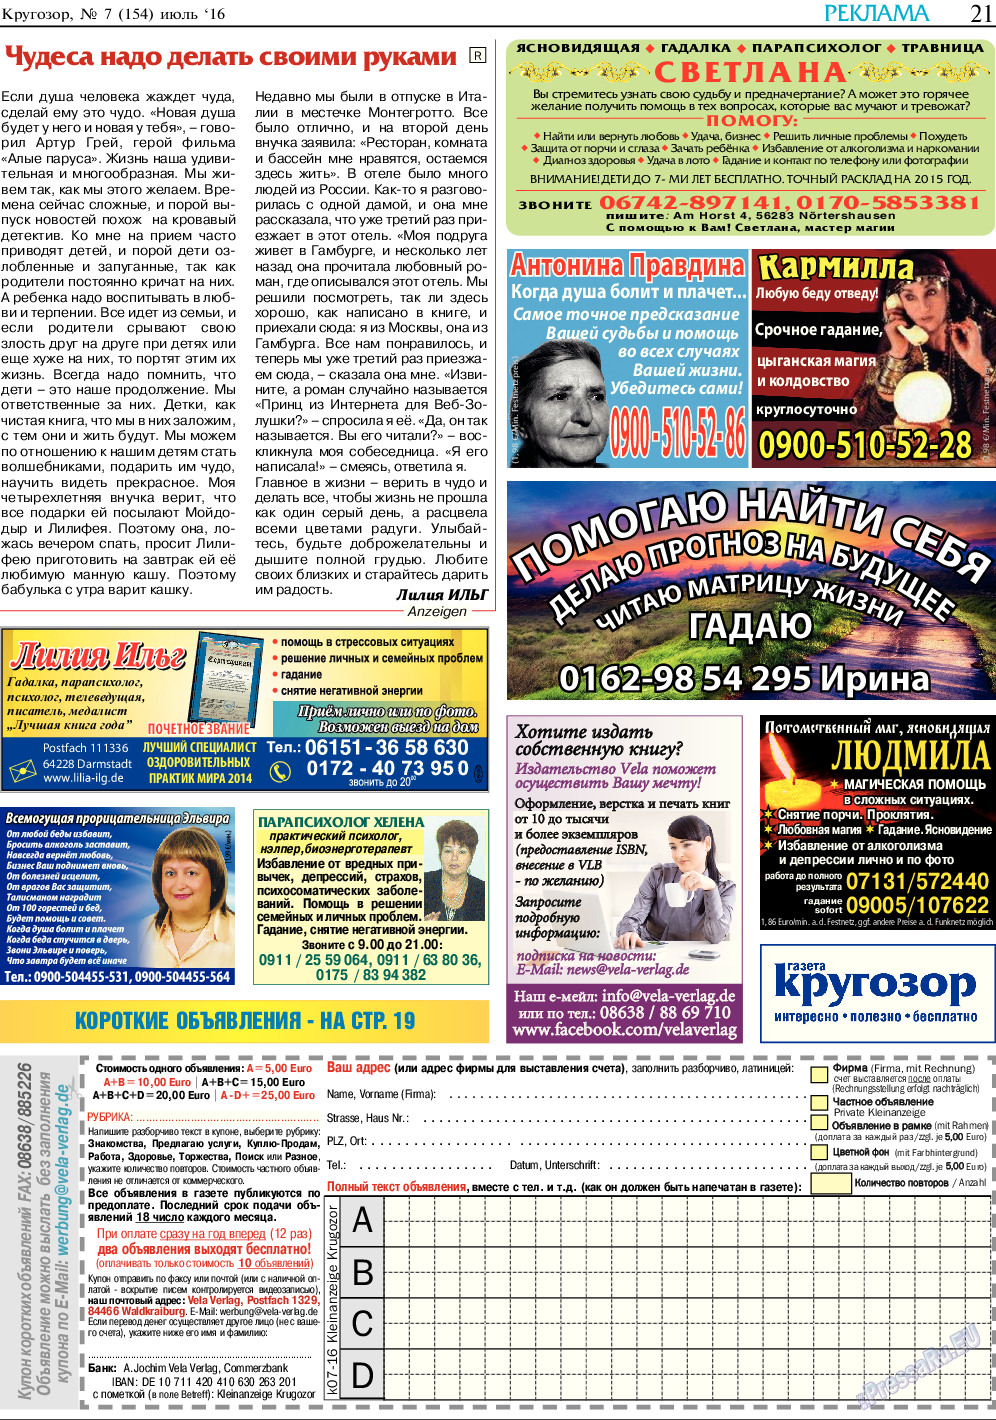 Кругозор, газета. 2016 №7 стр.21